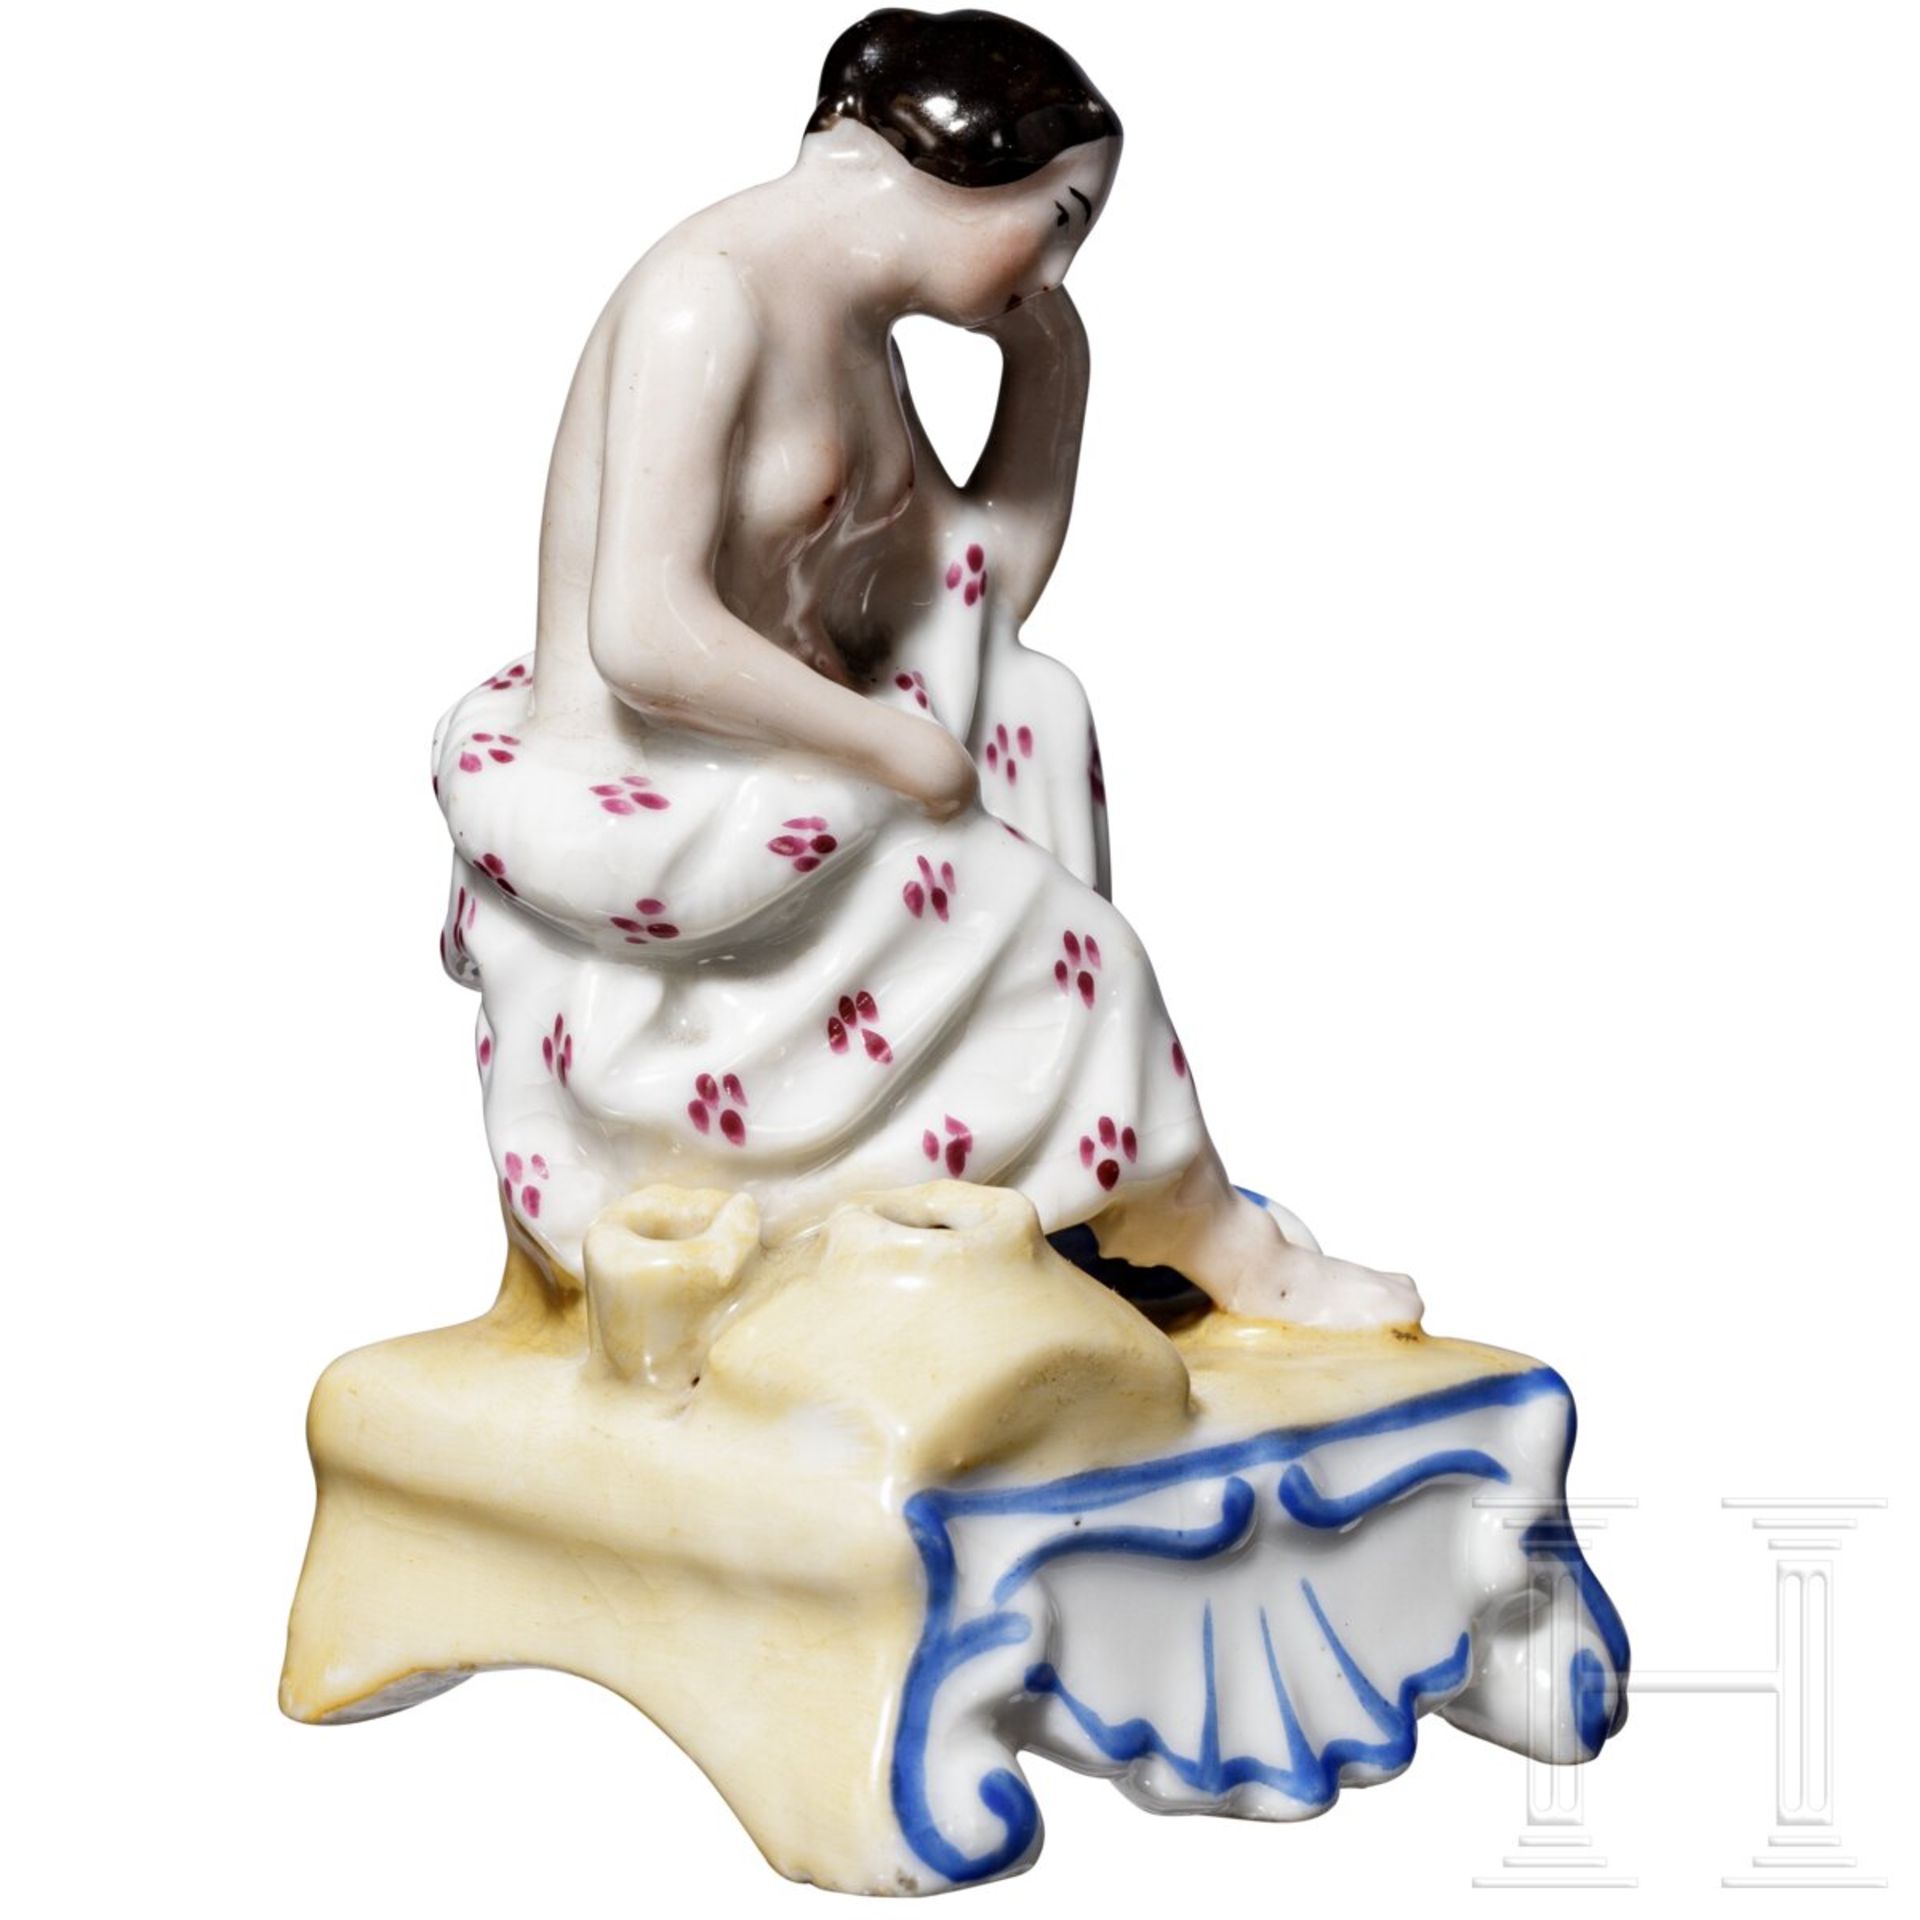 Erotische Porzellanfigur als Duftbehälter, russische Privatmanufaktur, Mitte 19. Jhdt. - Bild 2 aus 5